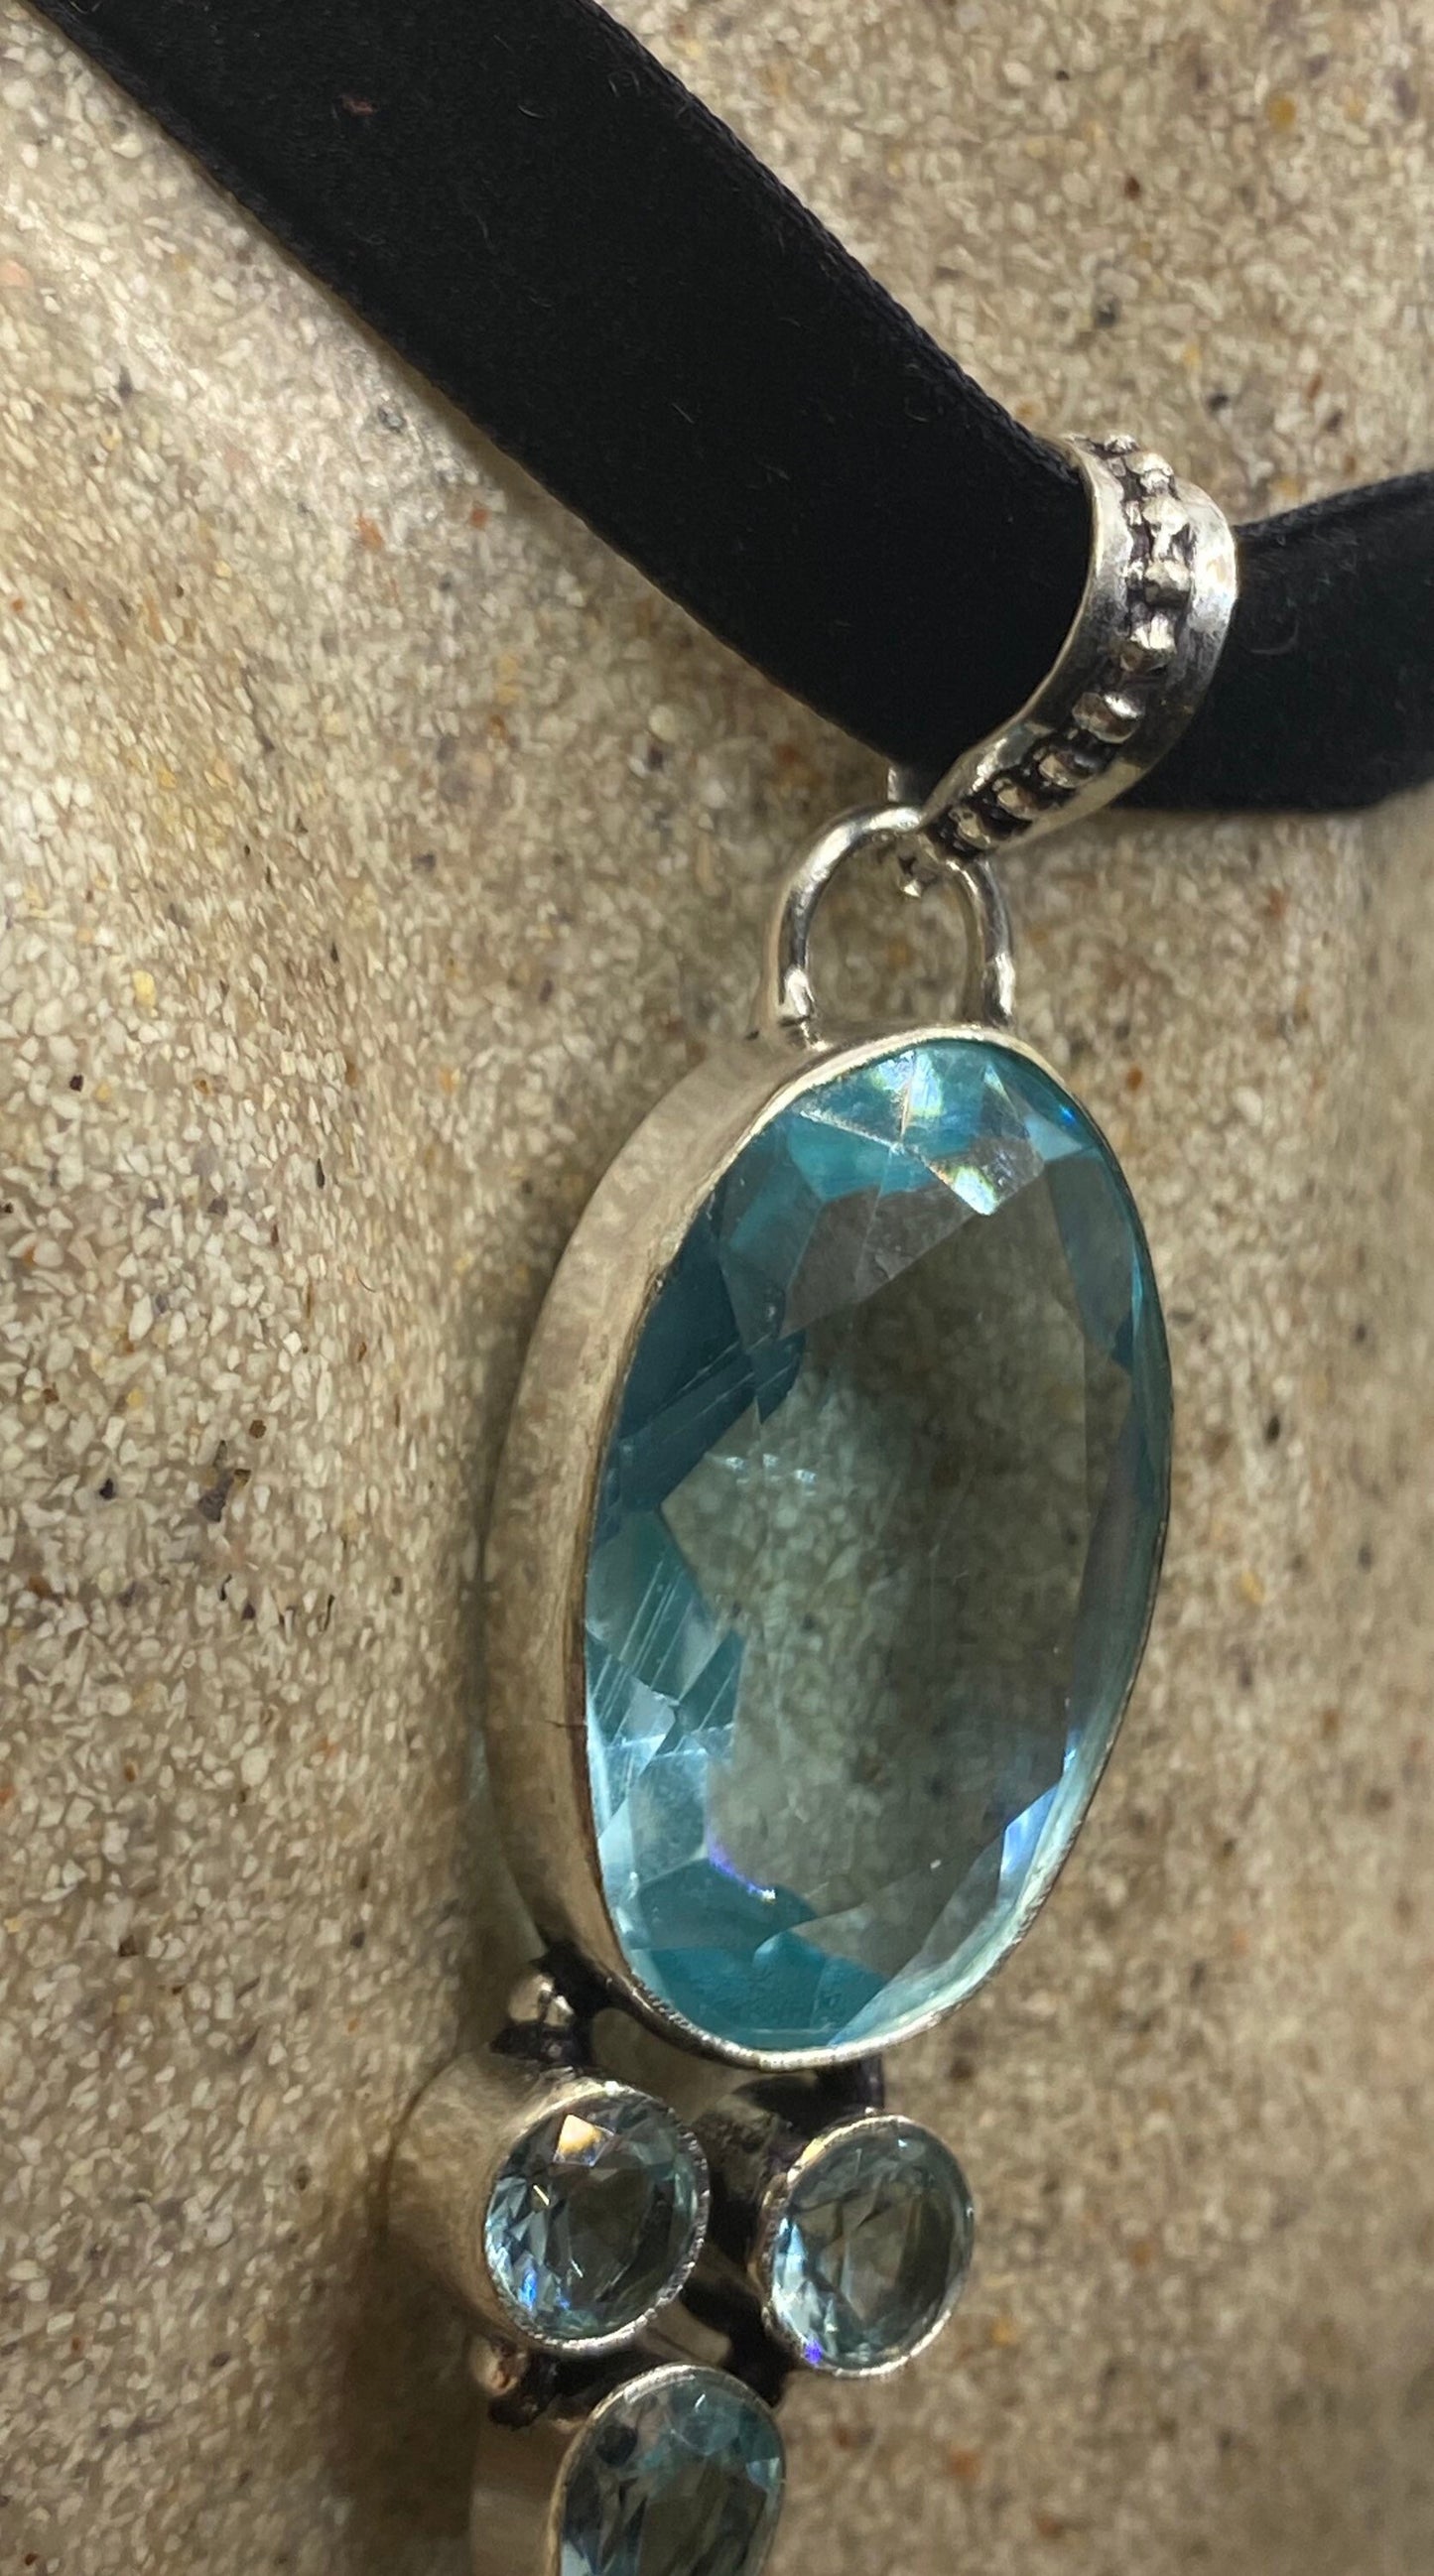 Antique Aqua Blue Volcanic Glass Choker Necklace